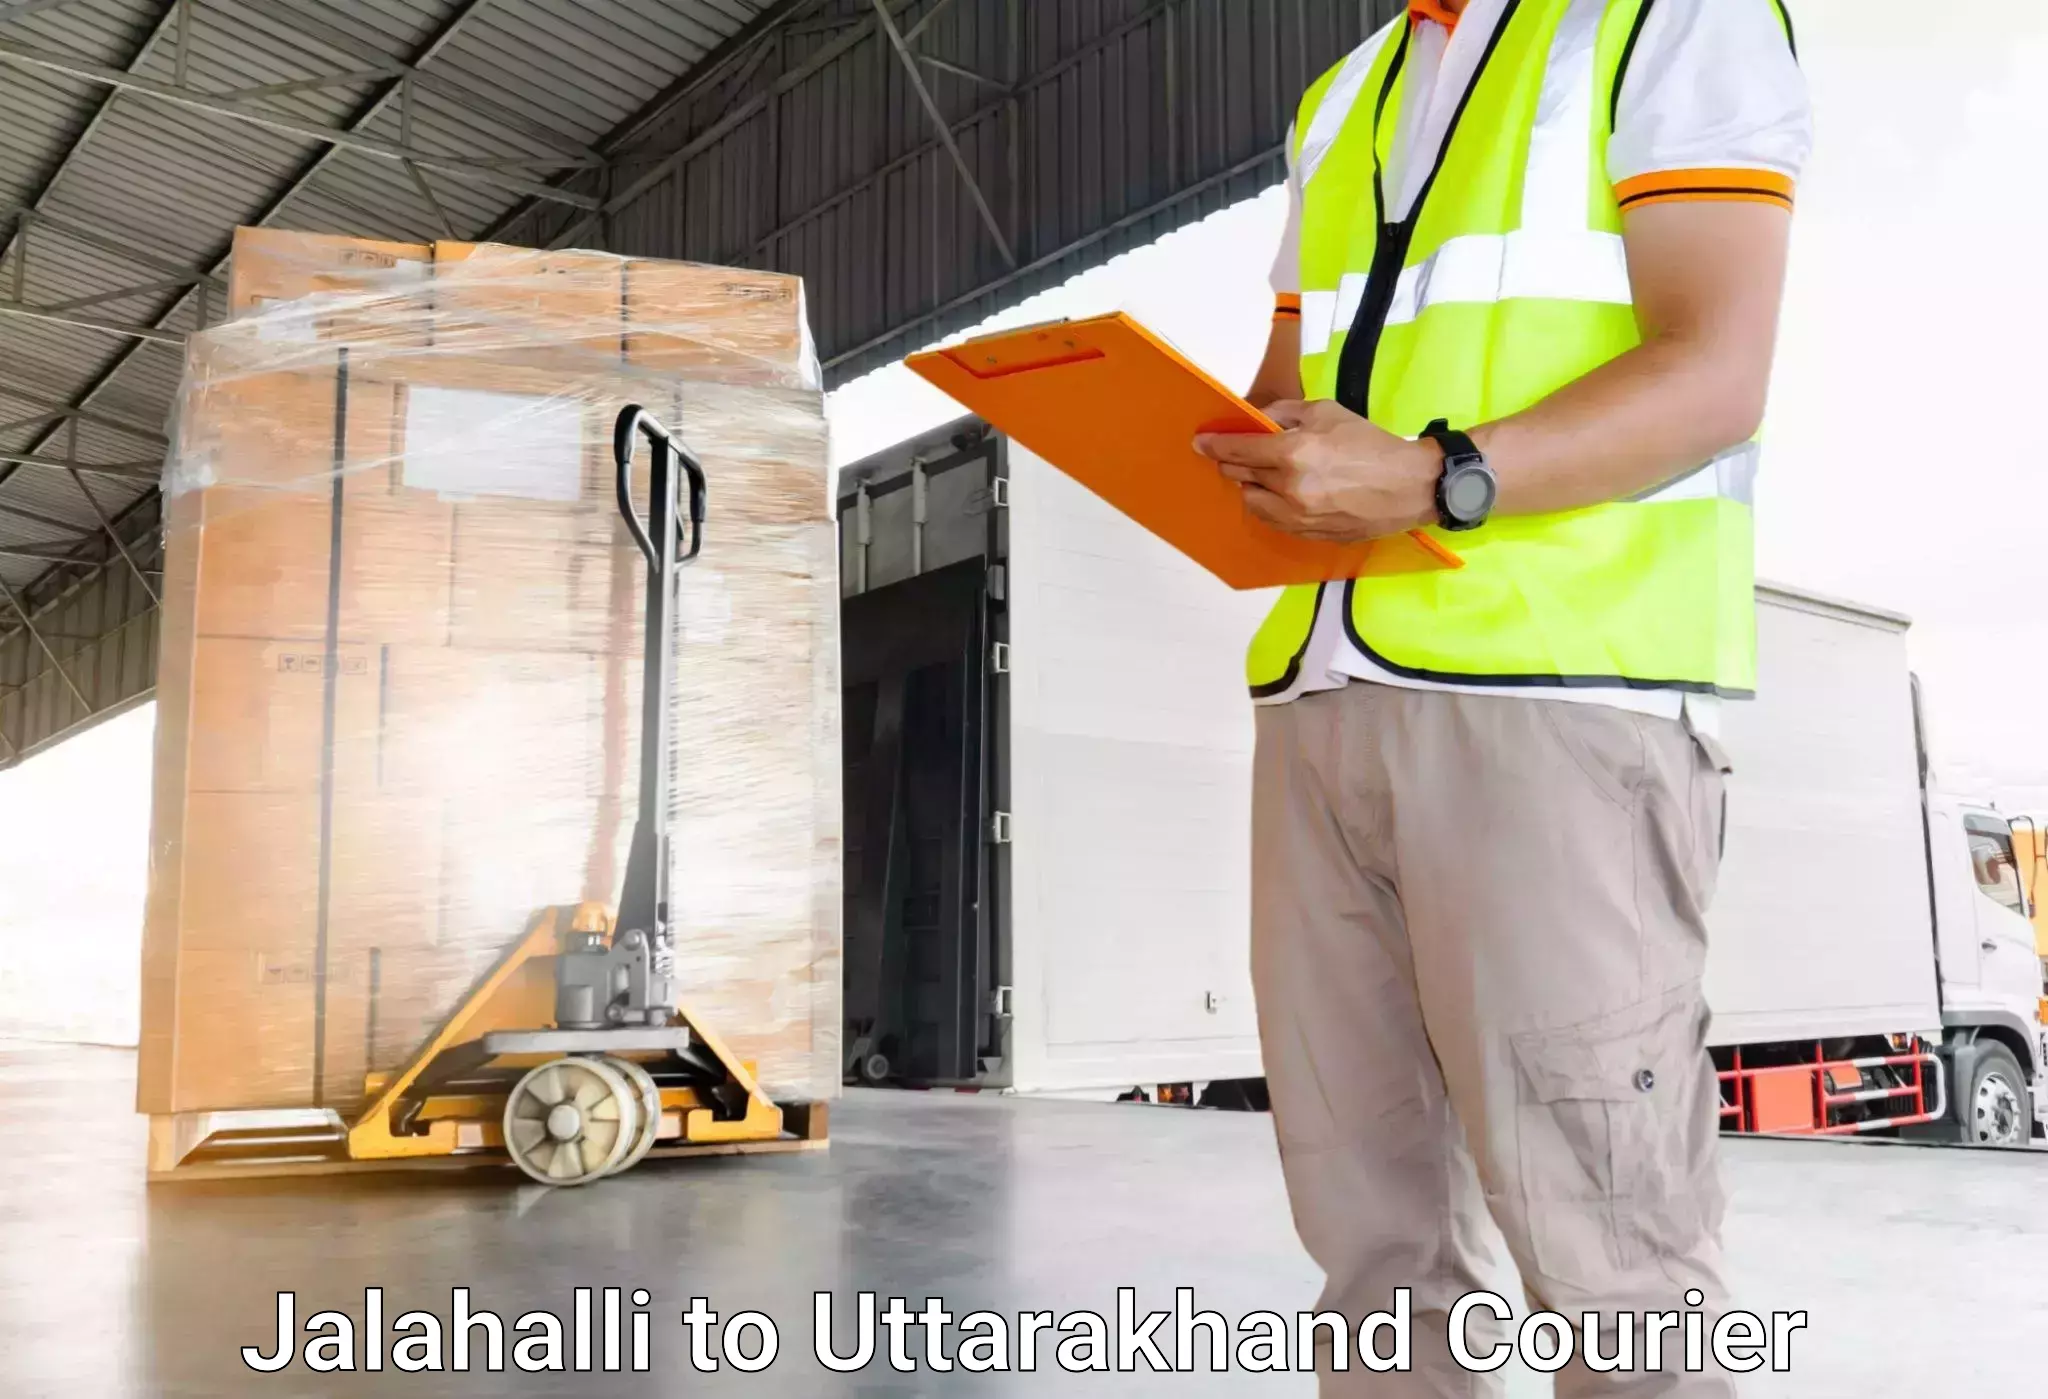 Luggage delivery app Jalahalli to Uttarakhand